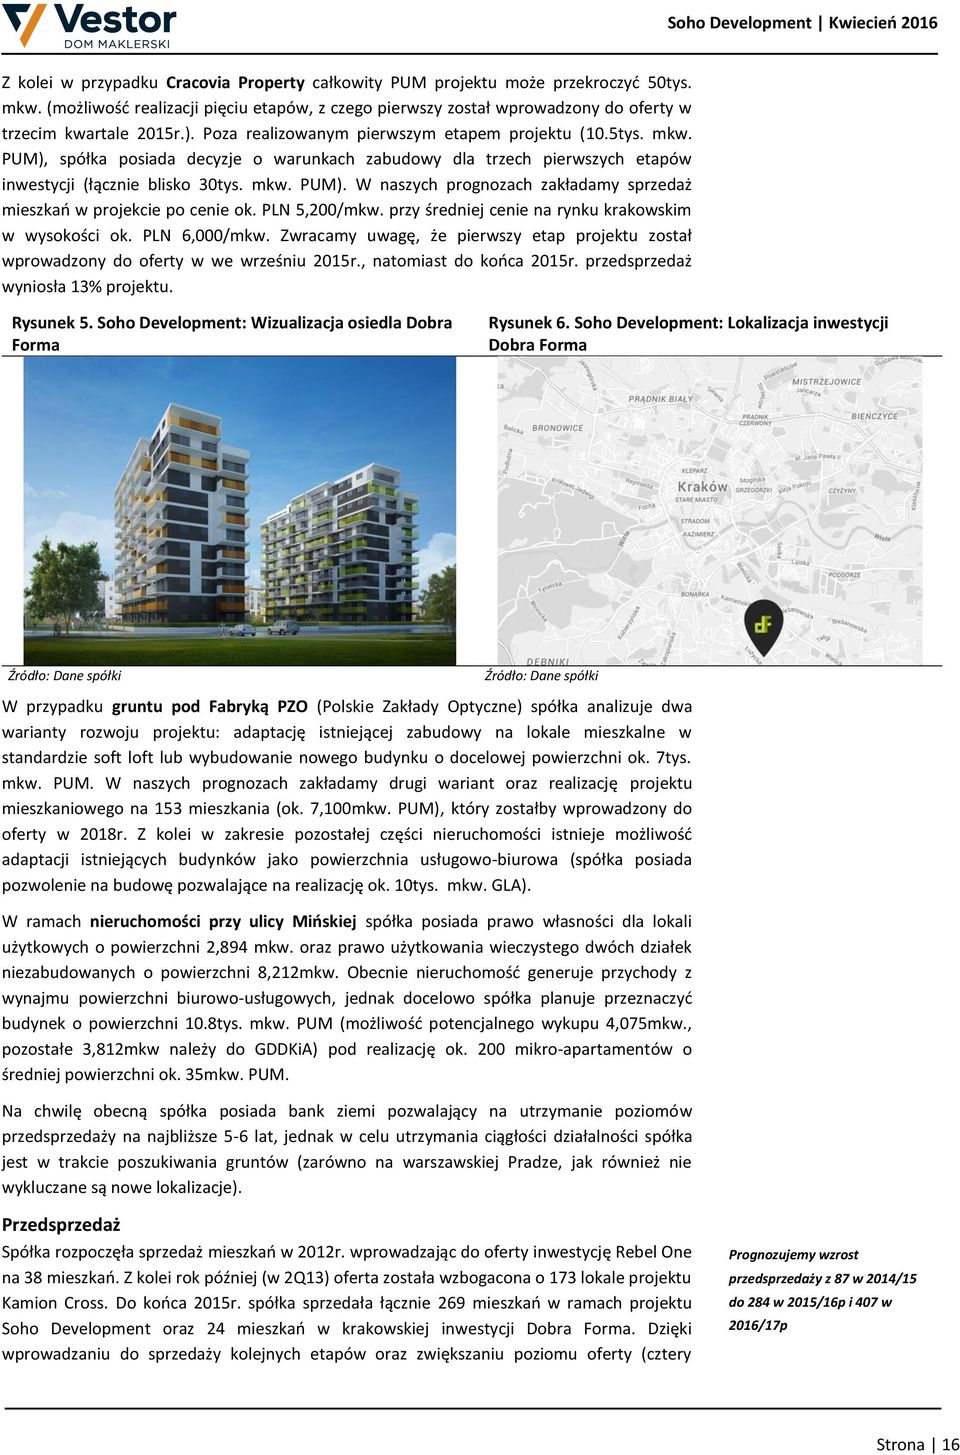 PLN 5,200/mkw. przy średniej cenie na rynku krakowskim w wysokości ok. PLN 6,000/mkw. Zwracamy uwagę, że pierwszy etap projektu został wprowadzony do oferty w we wrześniu 2015r.